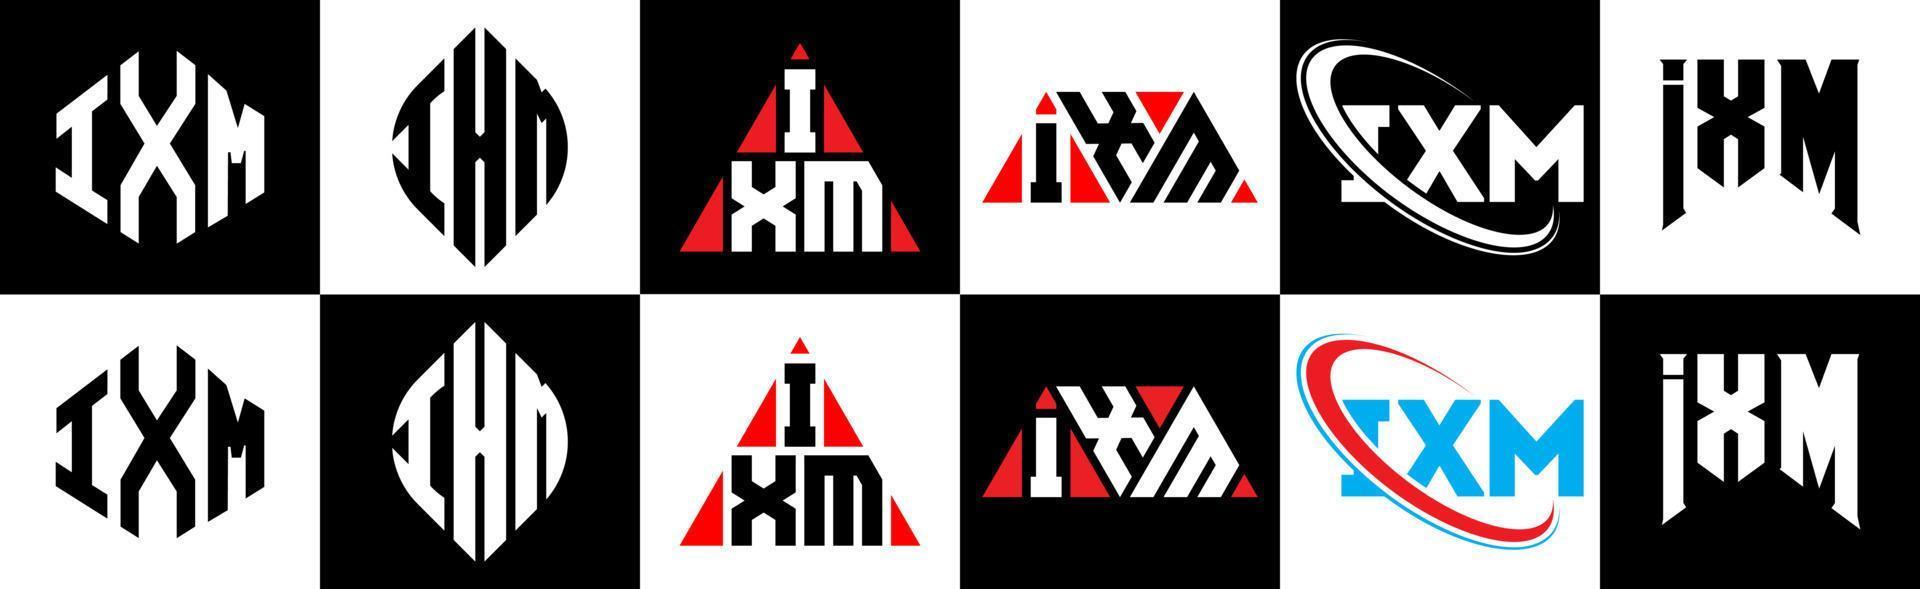 ixm-Buchstaben-Logo-Design in sechs Stilen. ixm Polygon, Kreis, Dreieck, Sechseck, flacher und einfacher Stil mit schwarz-weißem Buchstabenlogo in einer Zeichenfläche. ixm minimalistisches und klassisches Logo vektor